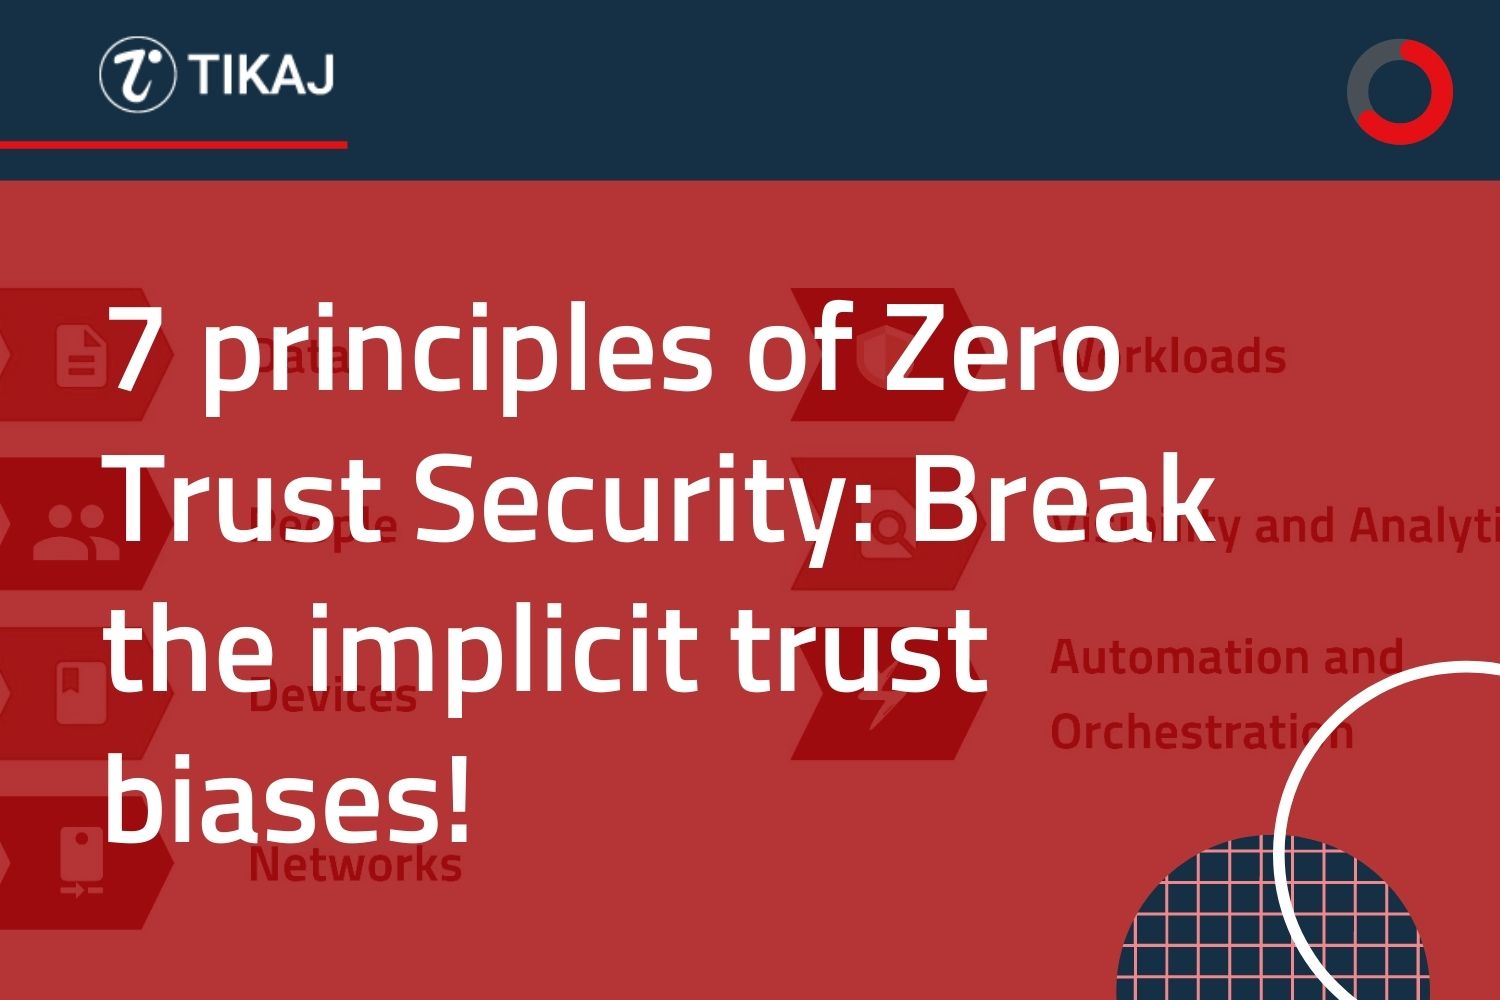 7 principles of Zero Trust Security: Break the implicit trust biases!